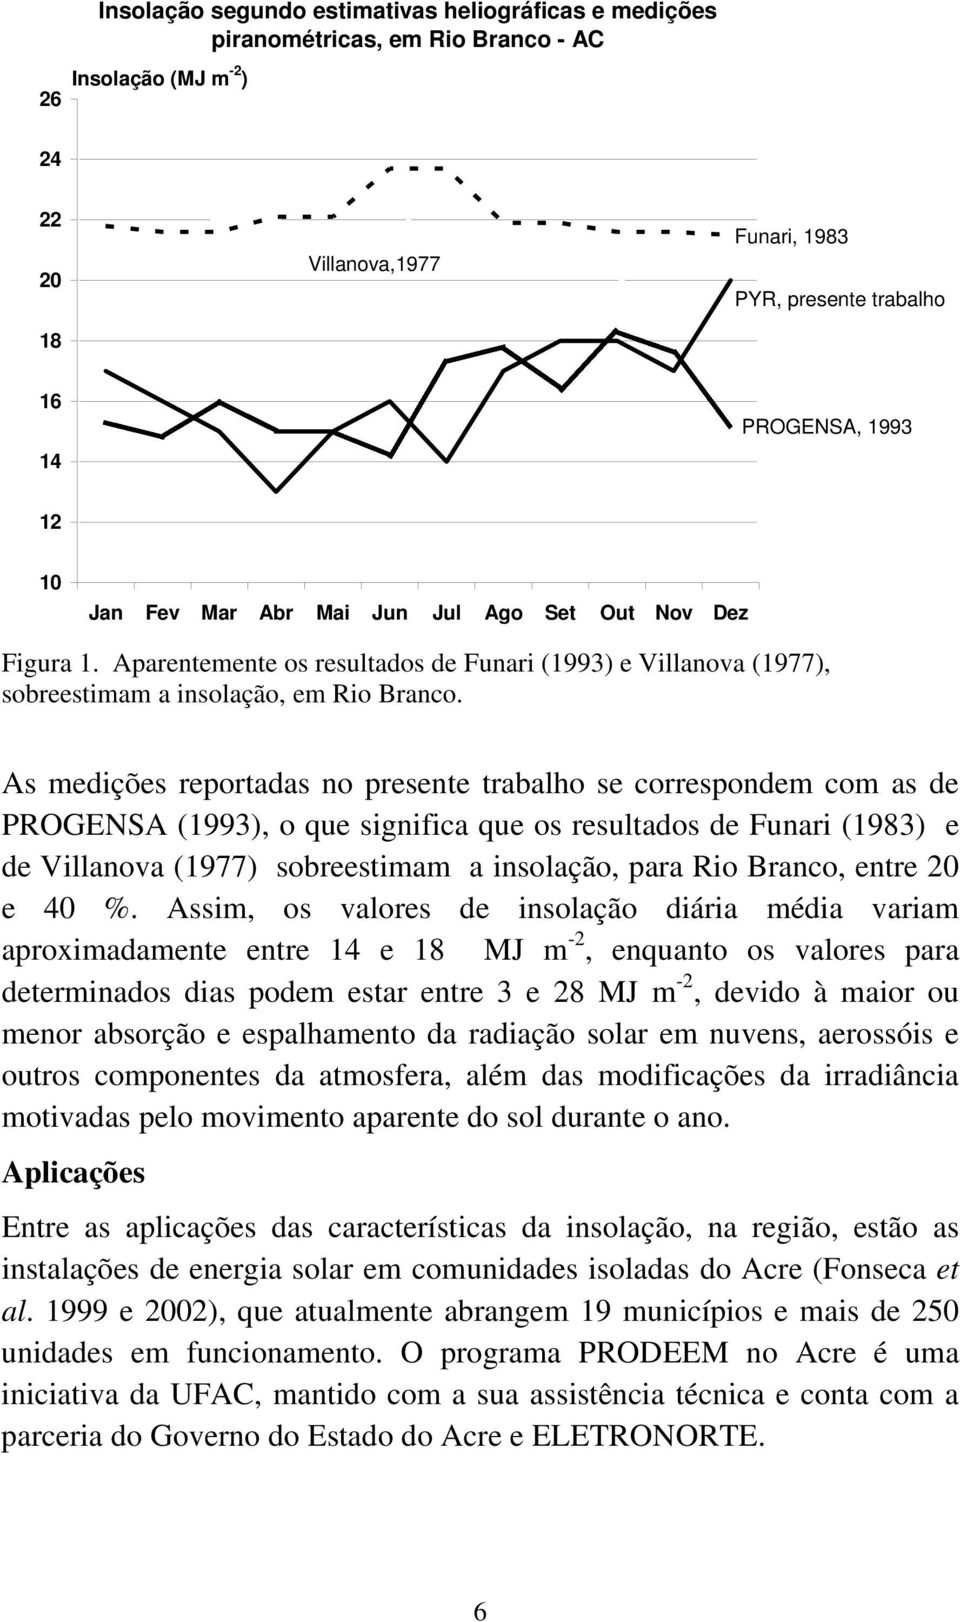 As medições reportadas no presente trabalho se correspondem com as de PROGENSA (1993), o que significa que os resultados de Funari (1983) e de Villanova (1977) sobreestimam a insolação, para Rio